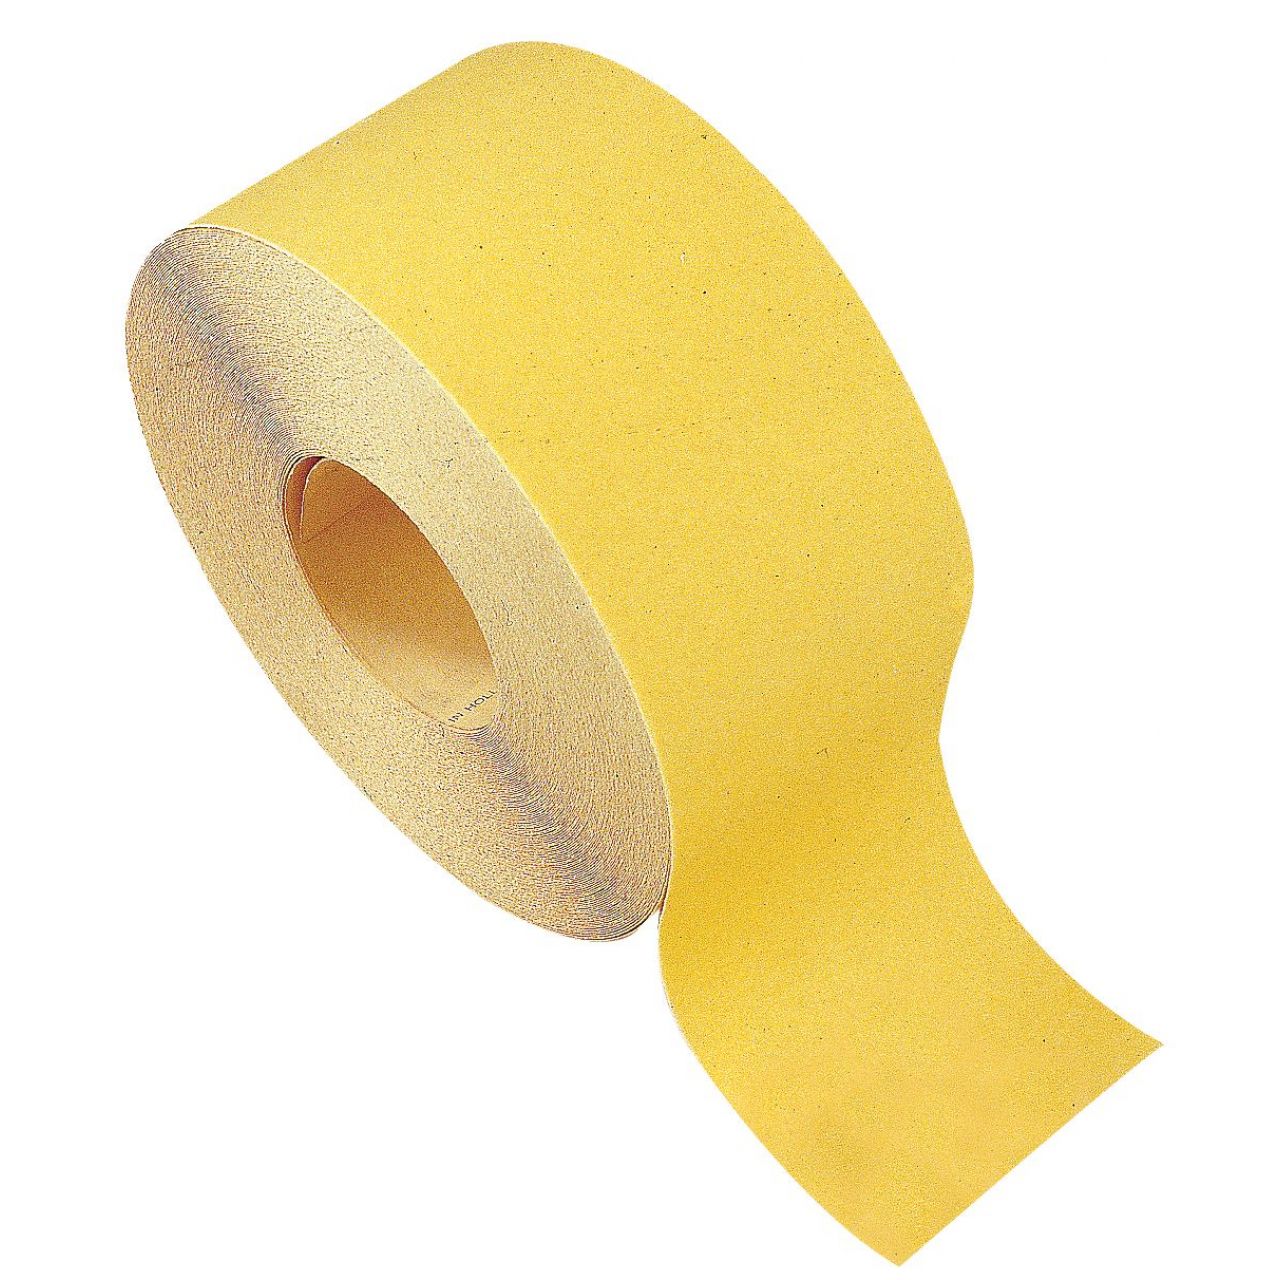 Rollos papel lija Óxido de Aluminio amarillo (120 mm x Gr.40)